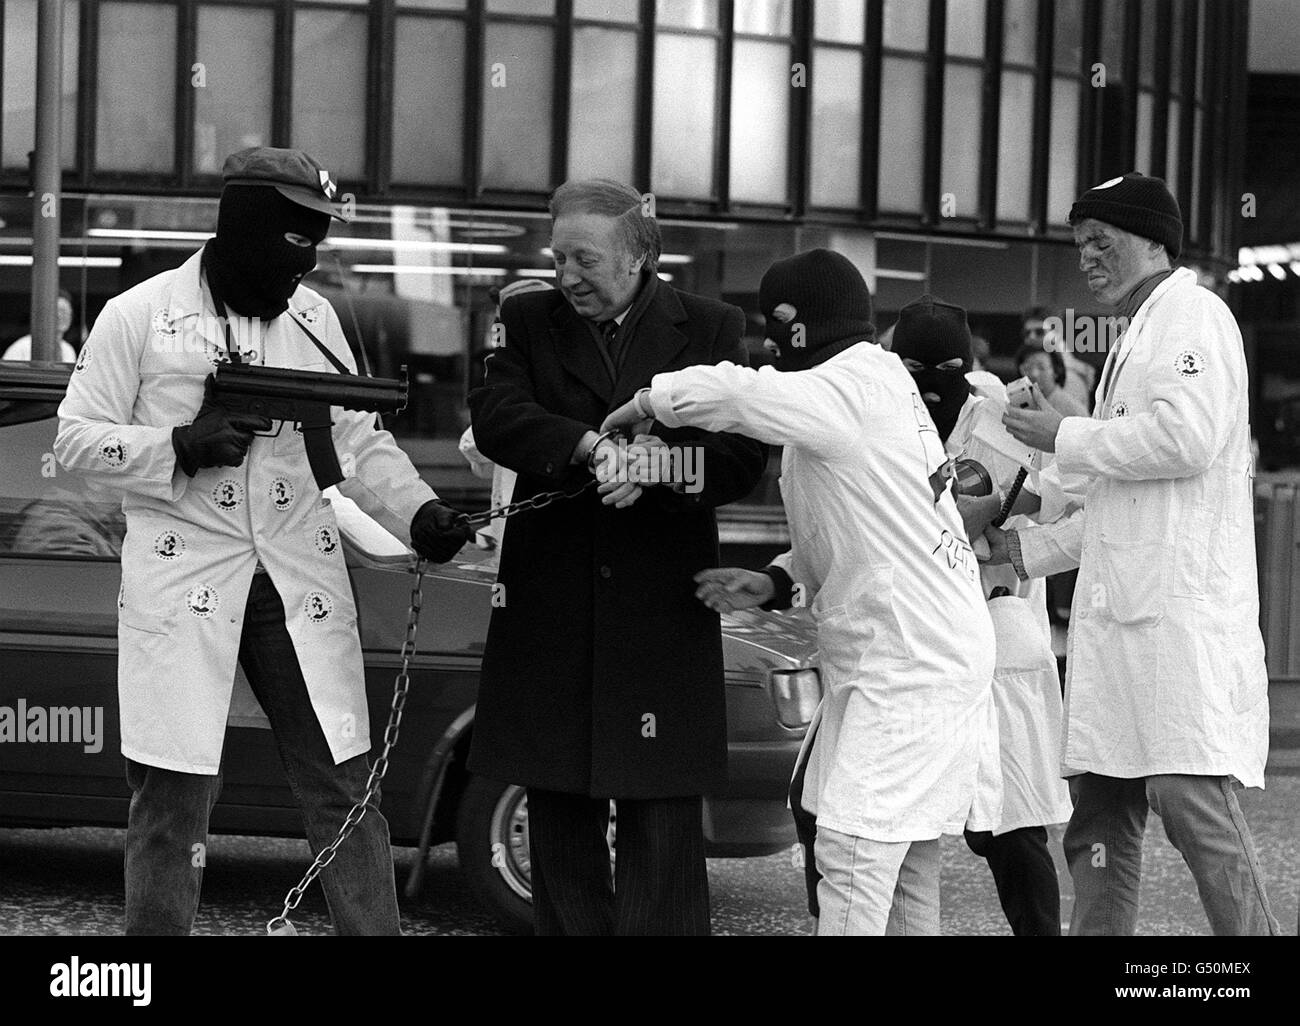 Ein dramatischer Vorfall im Zentrum von London, als sich verdeckte Schützen auf den Bergarbeiterführer Arthur Scargill stürzten, der prompt mit Handschellen gefesselt und in Ketten abgeführt wurde (Scargill wurde von Studenten des Barts Hospital "entführt", um ihre Gewerkschaft RAG Week zu starten). Stockfoto